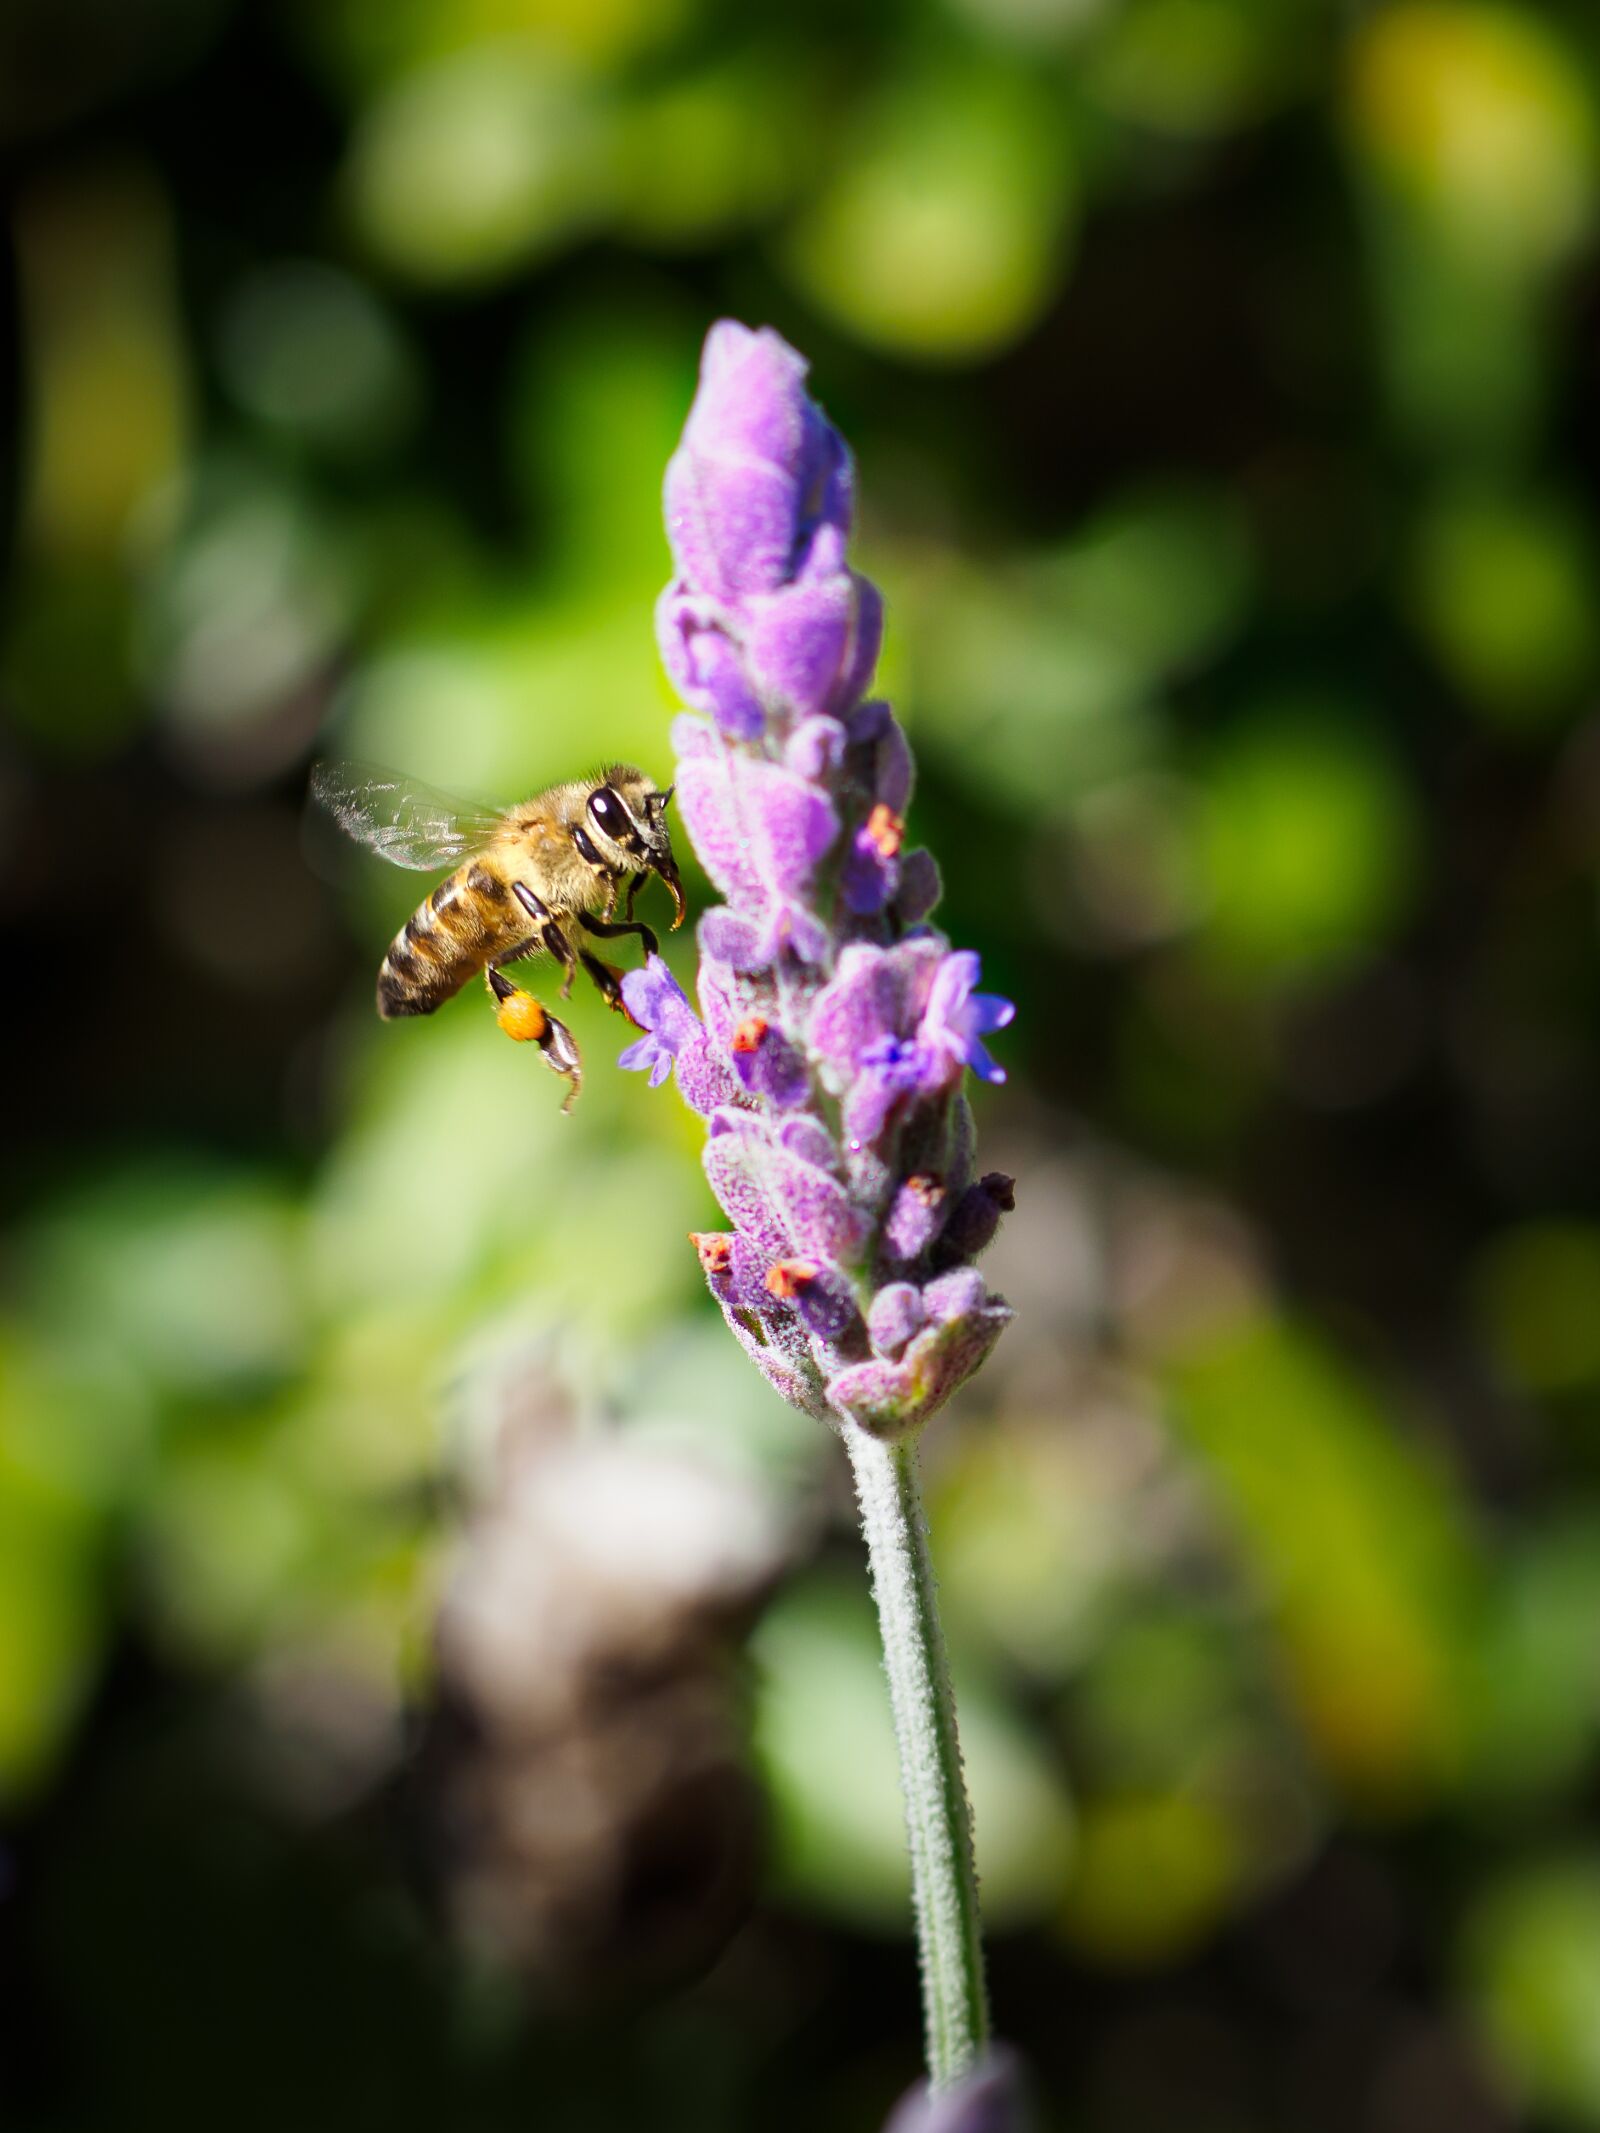 Olympus M.Zuiko Digital ED 30mm F3.5 Macro sample photo. Honey bee, flower, nature photography